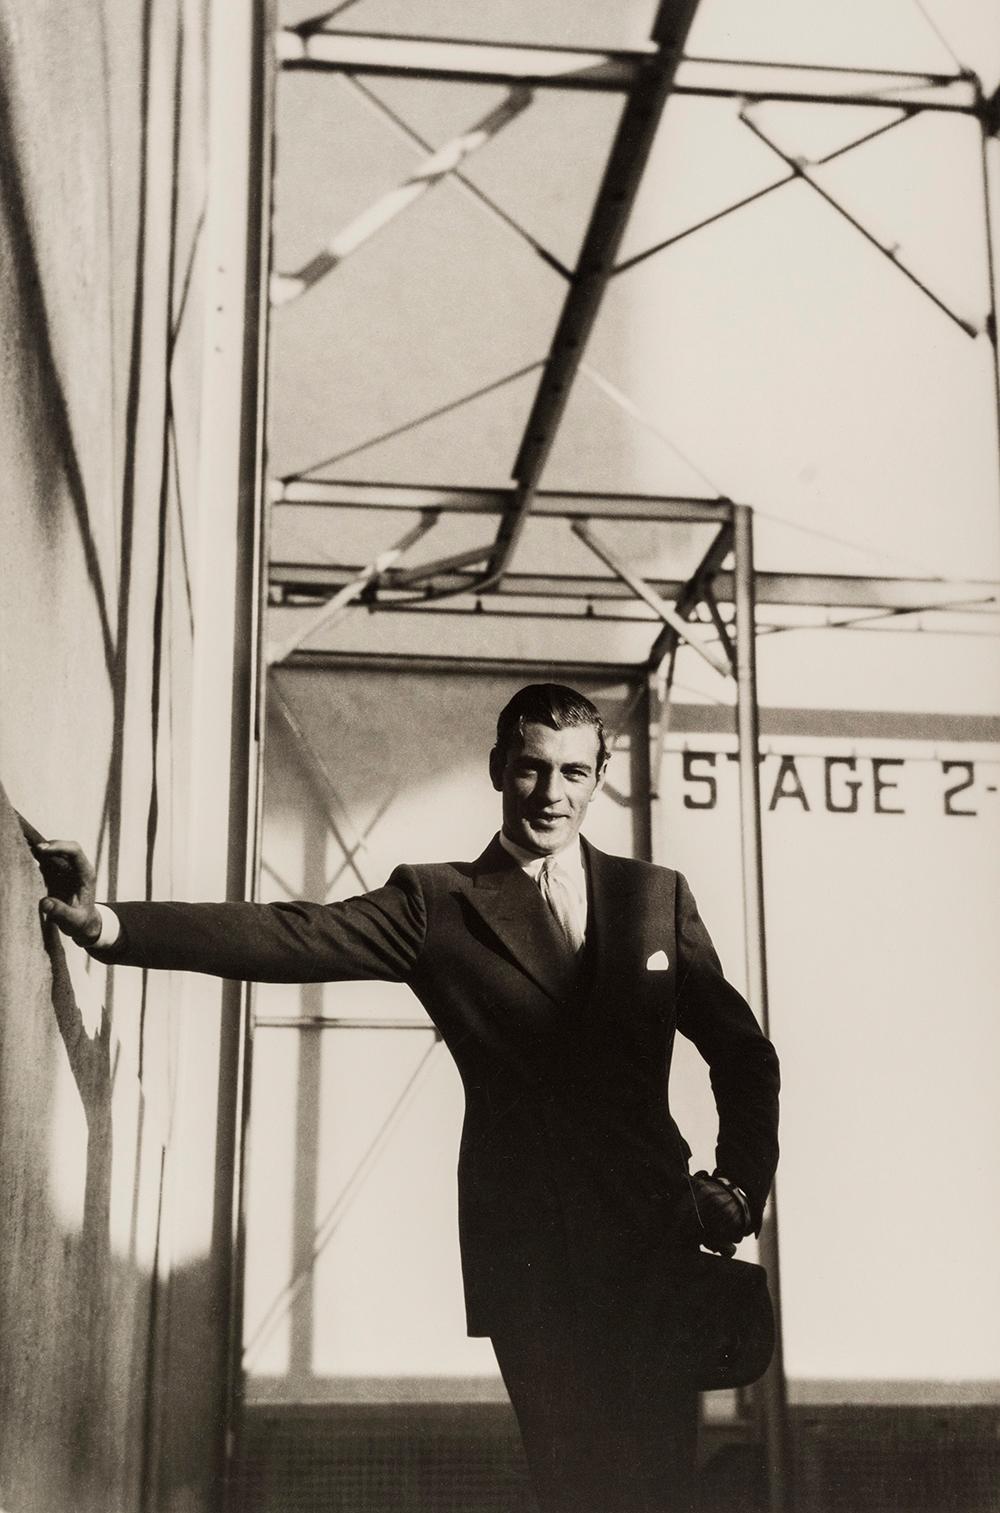 Gary Cooper, 1931 - Cecil Beaton (Porträtfotografie)
Signiert mit Bleistift auf dem Passepartout
Auf der Rückseite des Passepartouts mit dem Tintenstempel des Fotostudios gestempelt
Silbergelatineabzug, gedruckt 1970er Jahre
22 x 17 Zoll

Cecil